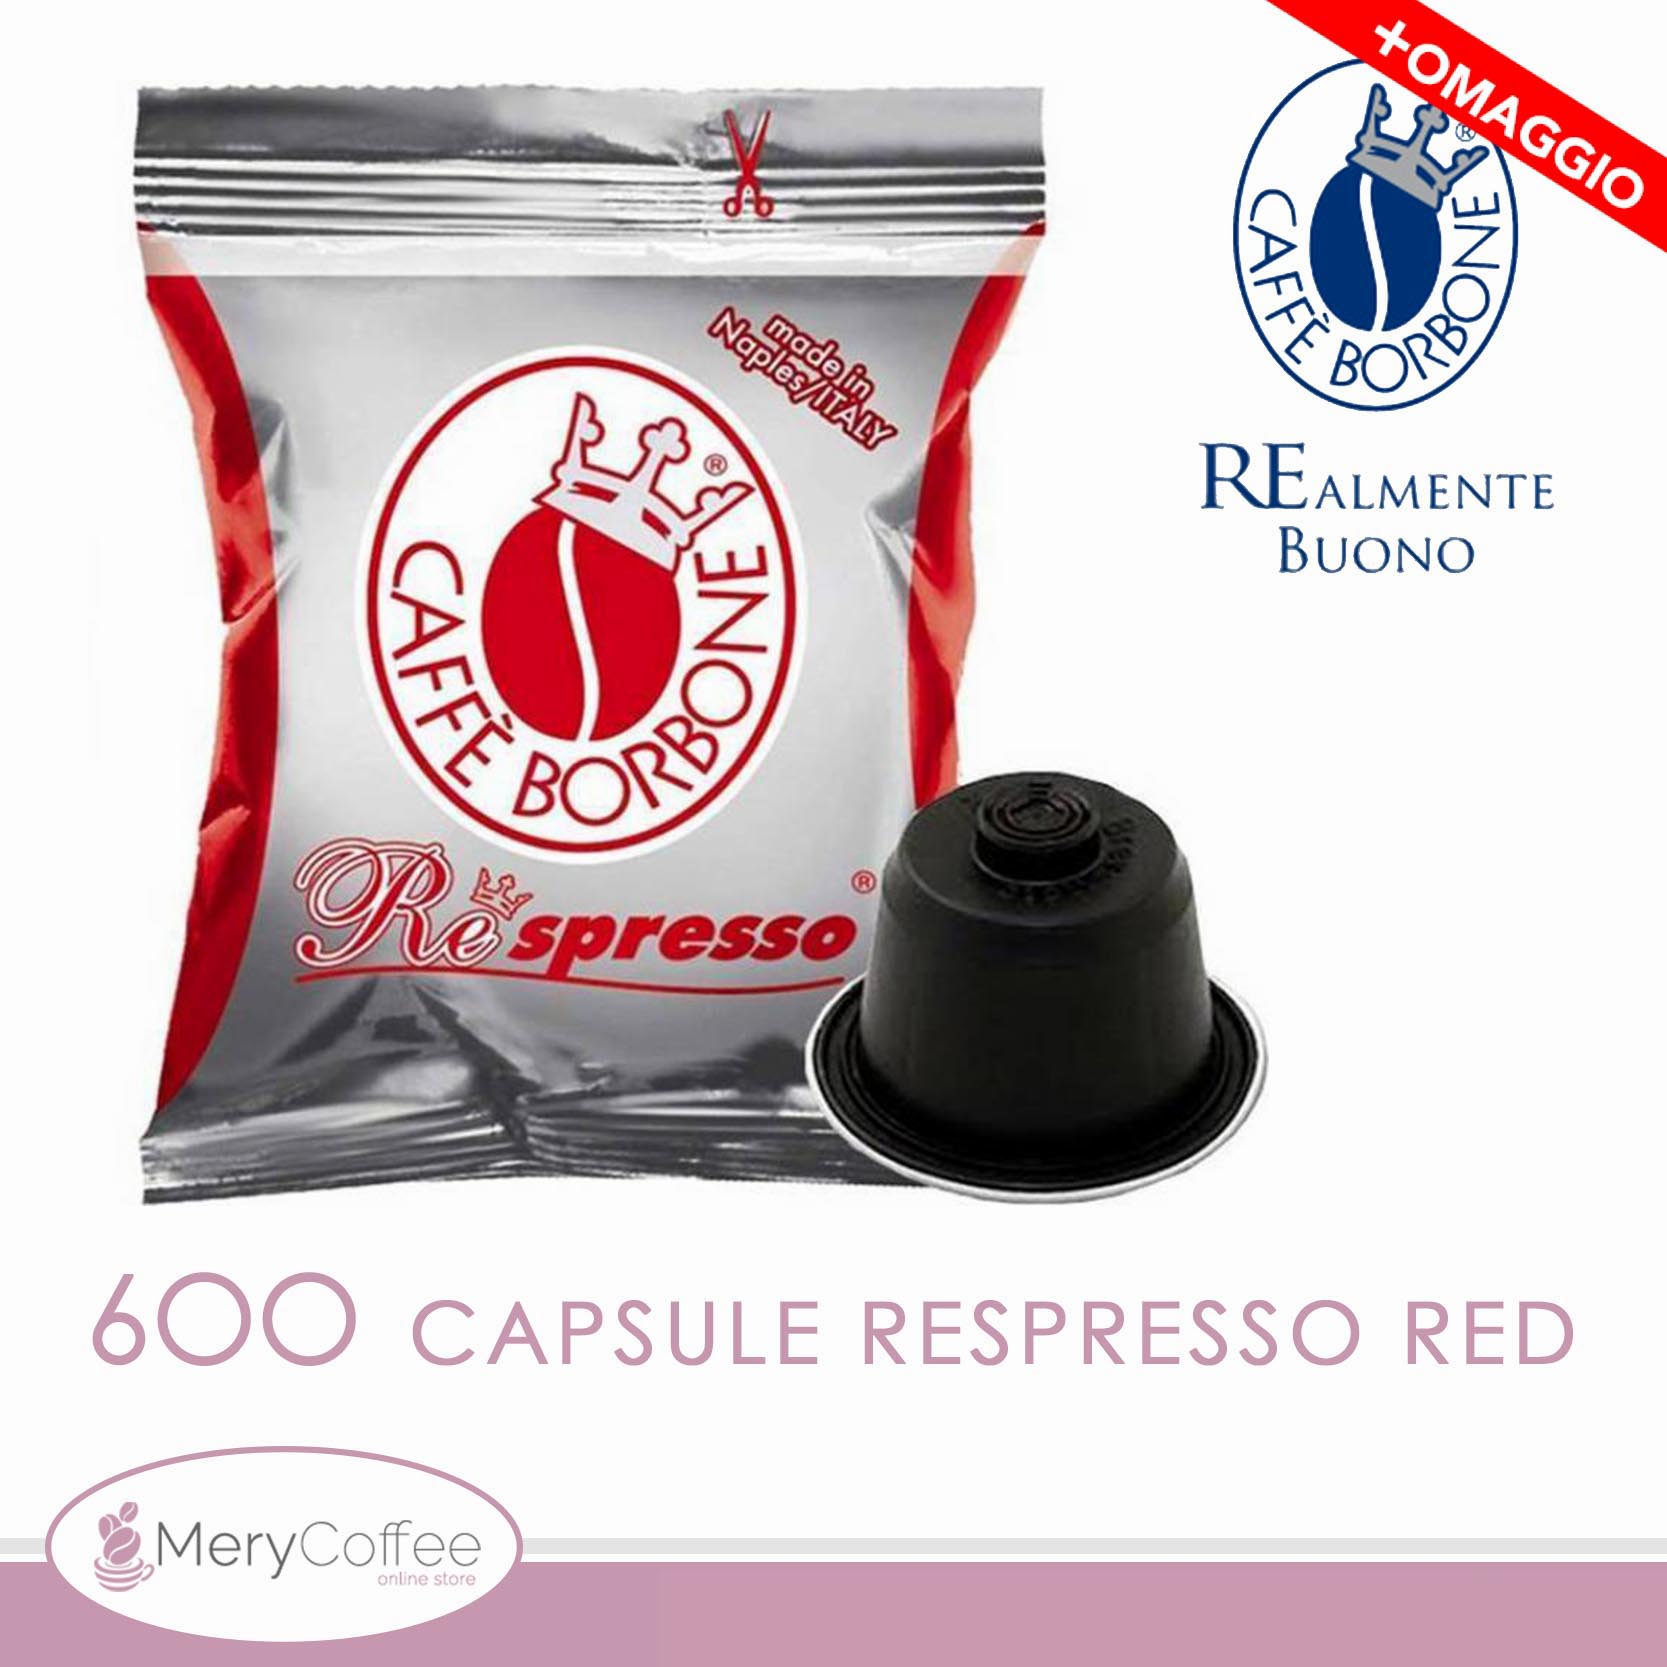 600 Capsule cialde Borbone REspresso Miscela ROSSA RED Compatibili  Nespresso*+omaggioo - MeryCoffee